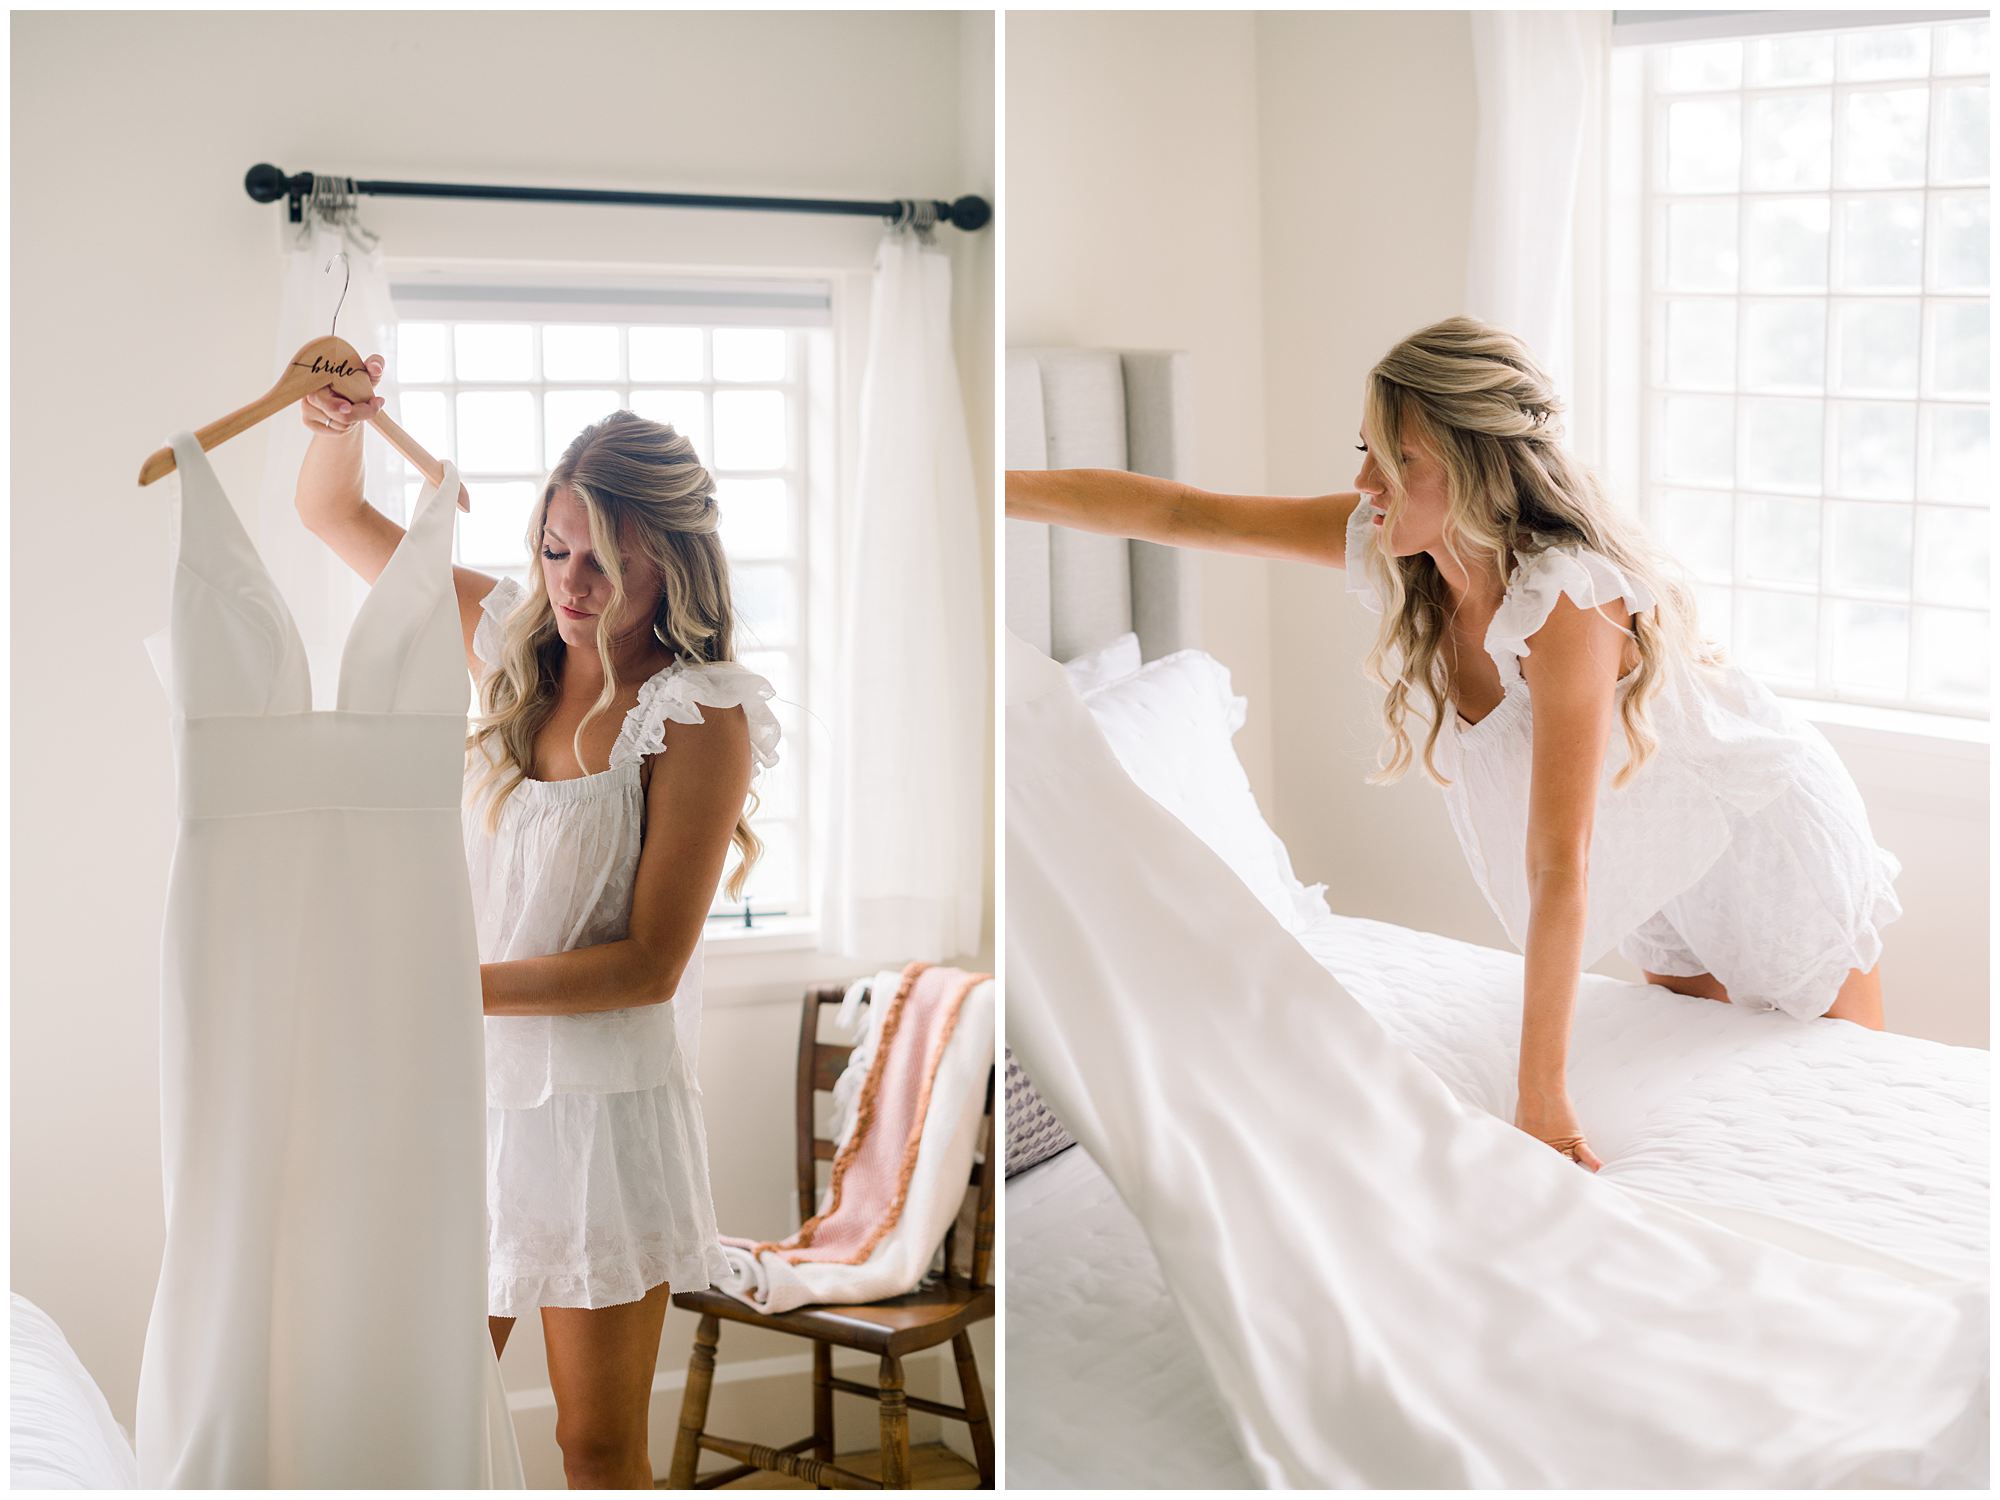 Rachel preparing her wedding gown